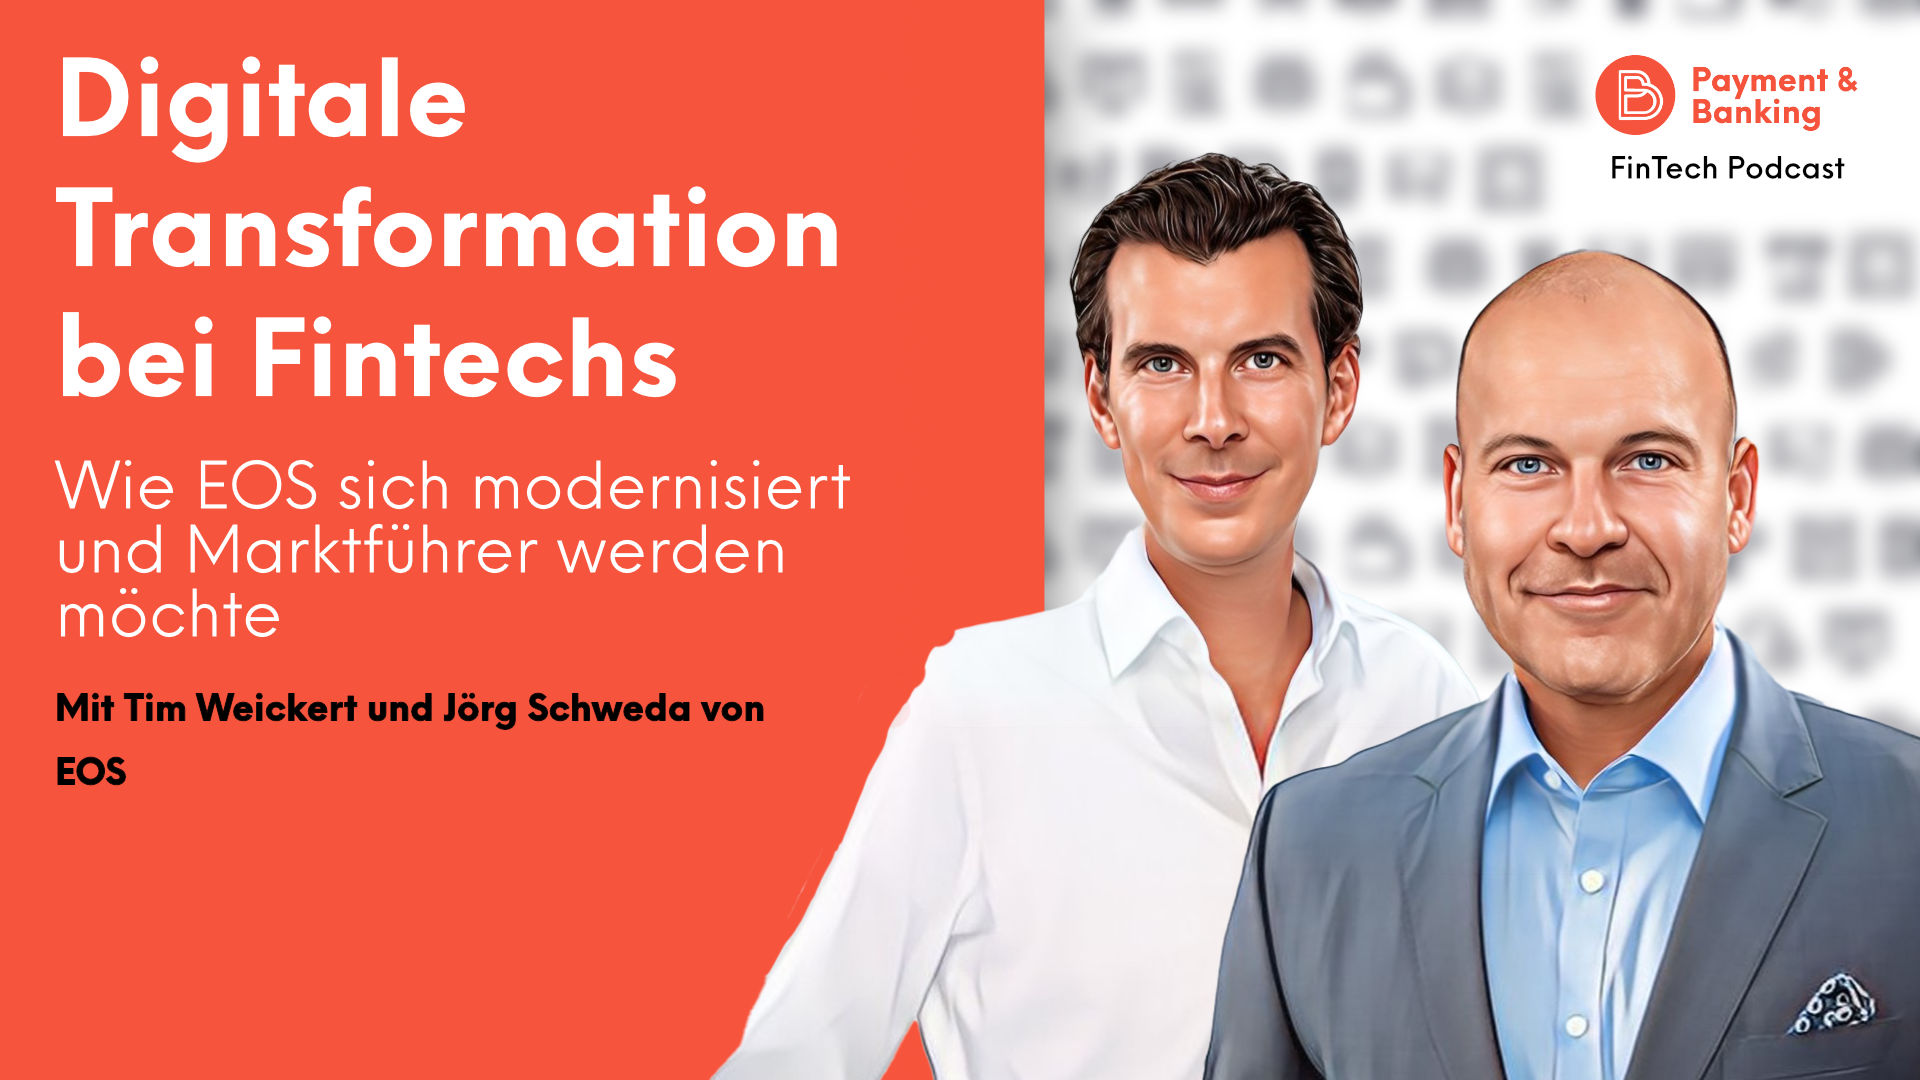 Tim Weickert, Managing Director, EOS Technology Solutions GmbH und Jörg Schweda, Managing Director, EOS Deutscher Inkasso-Dienst GmbH, sprechen über die digitale Transformation beim Fintech für Forderungsmanagement.